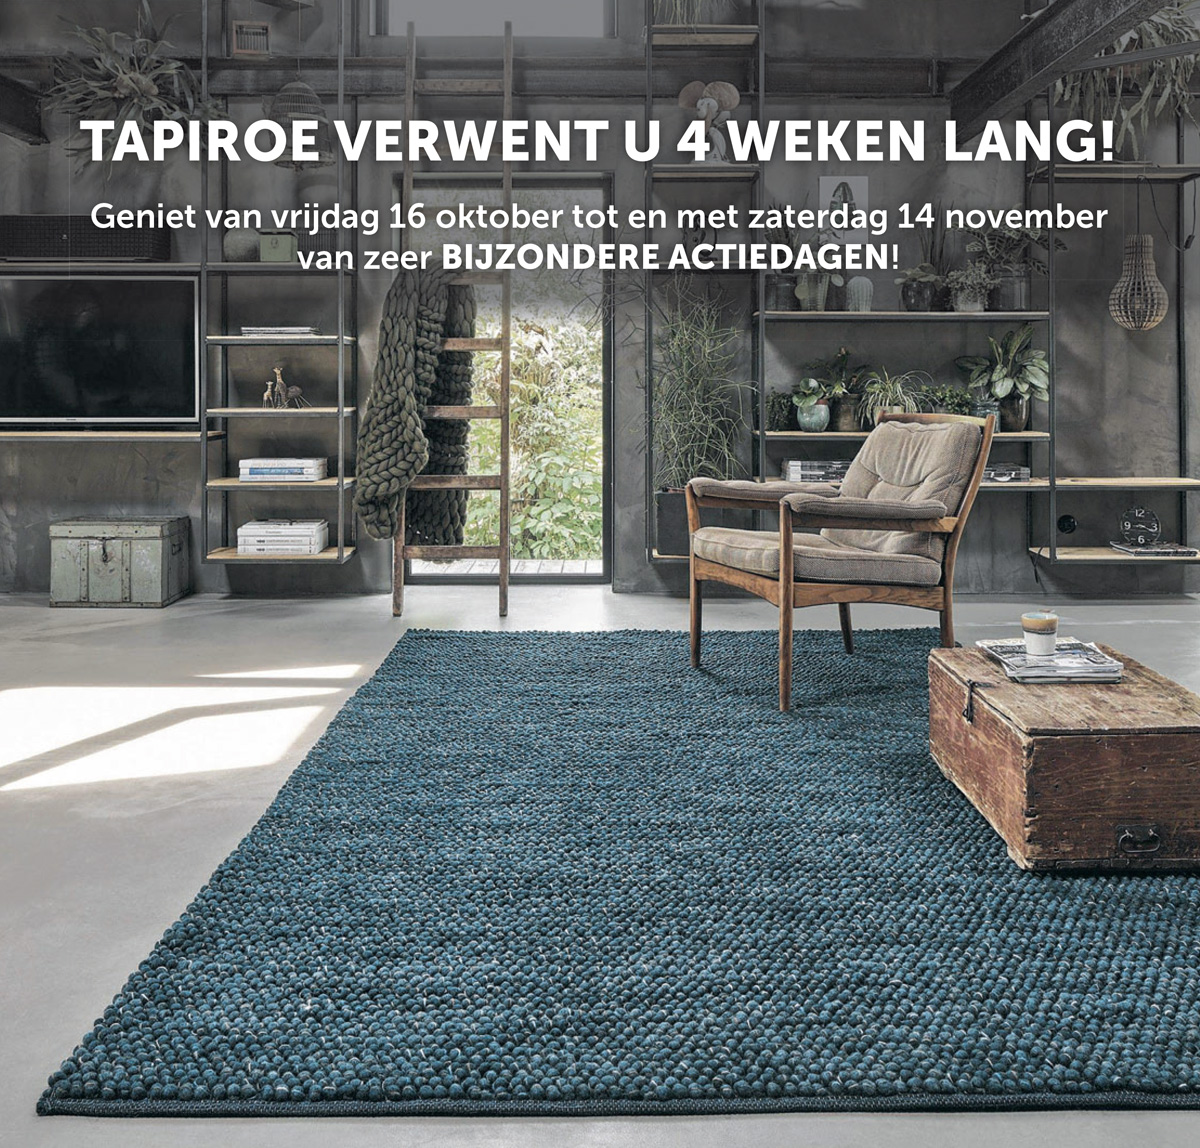 Afdeling Gedeeltelijk privaat Voor mooie tapijten en vloeren slechts één adres: Tapiroe